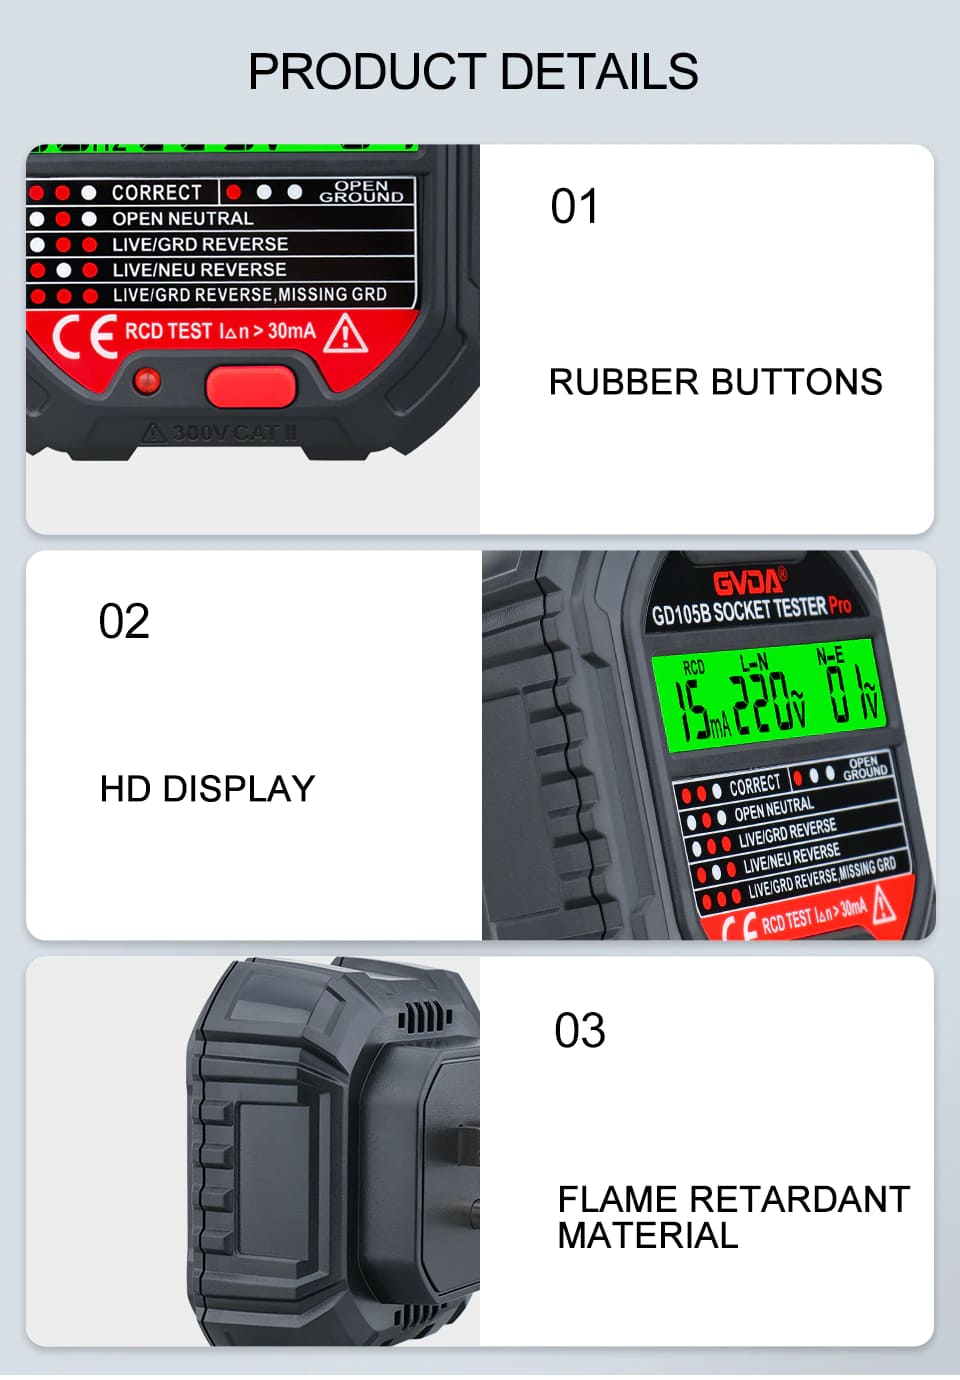 Verificador de Tensão Elétrica Testador de Tomada Com Display 90-250v GVDA